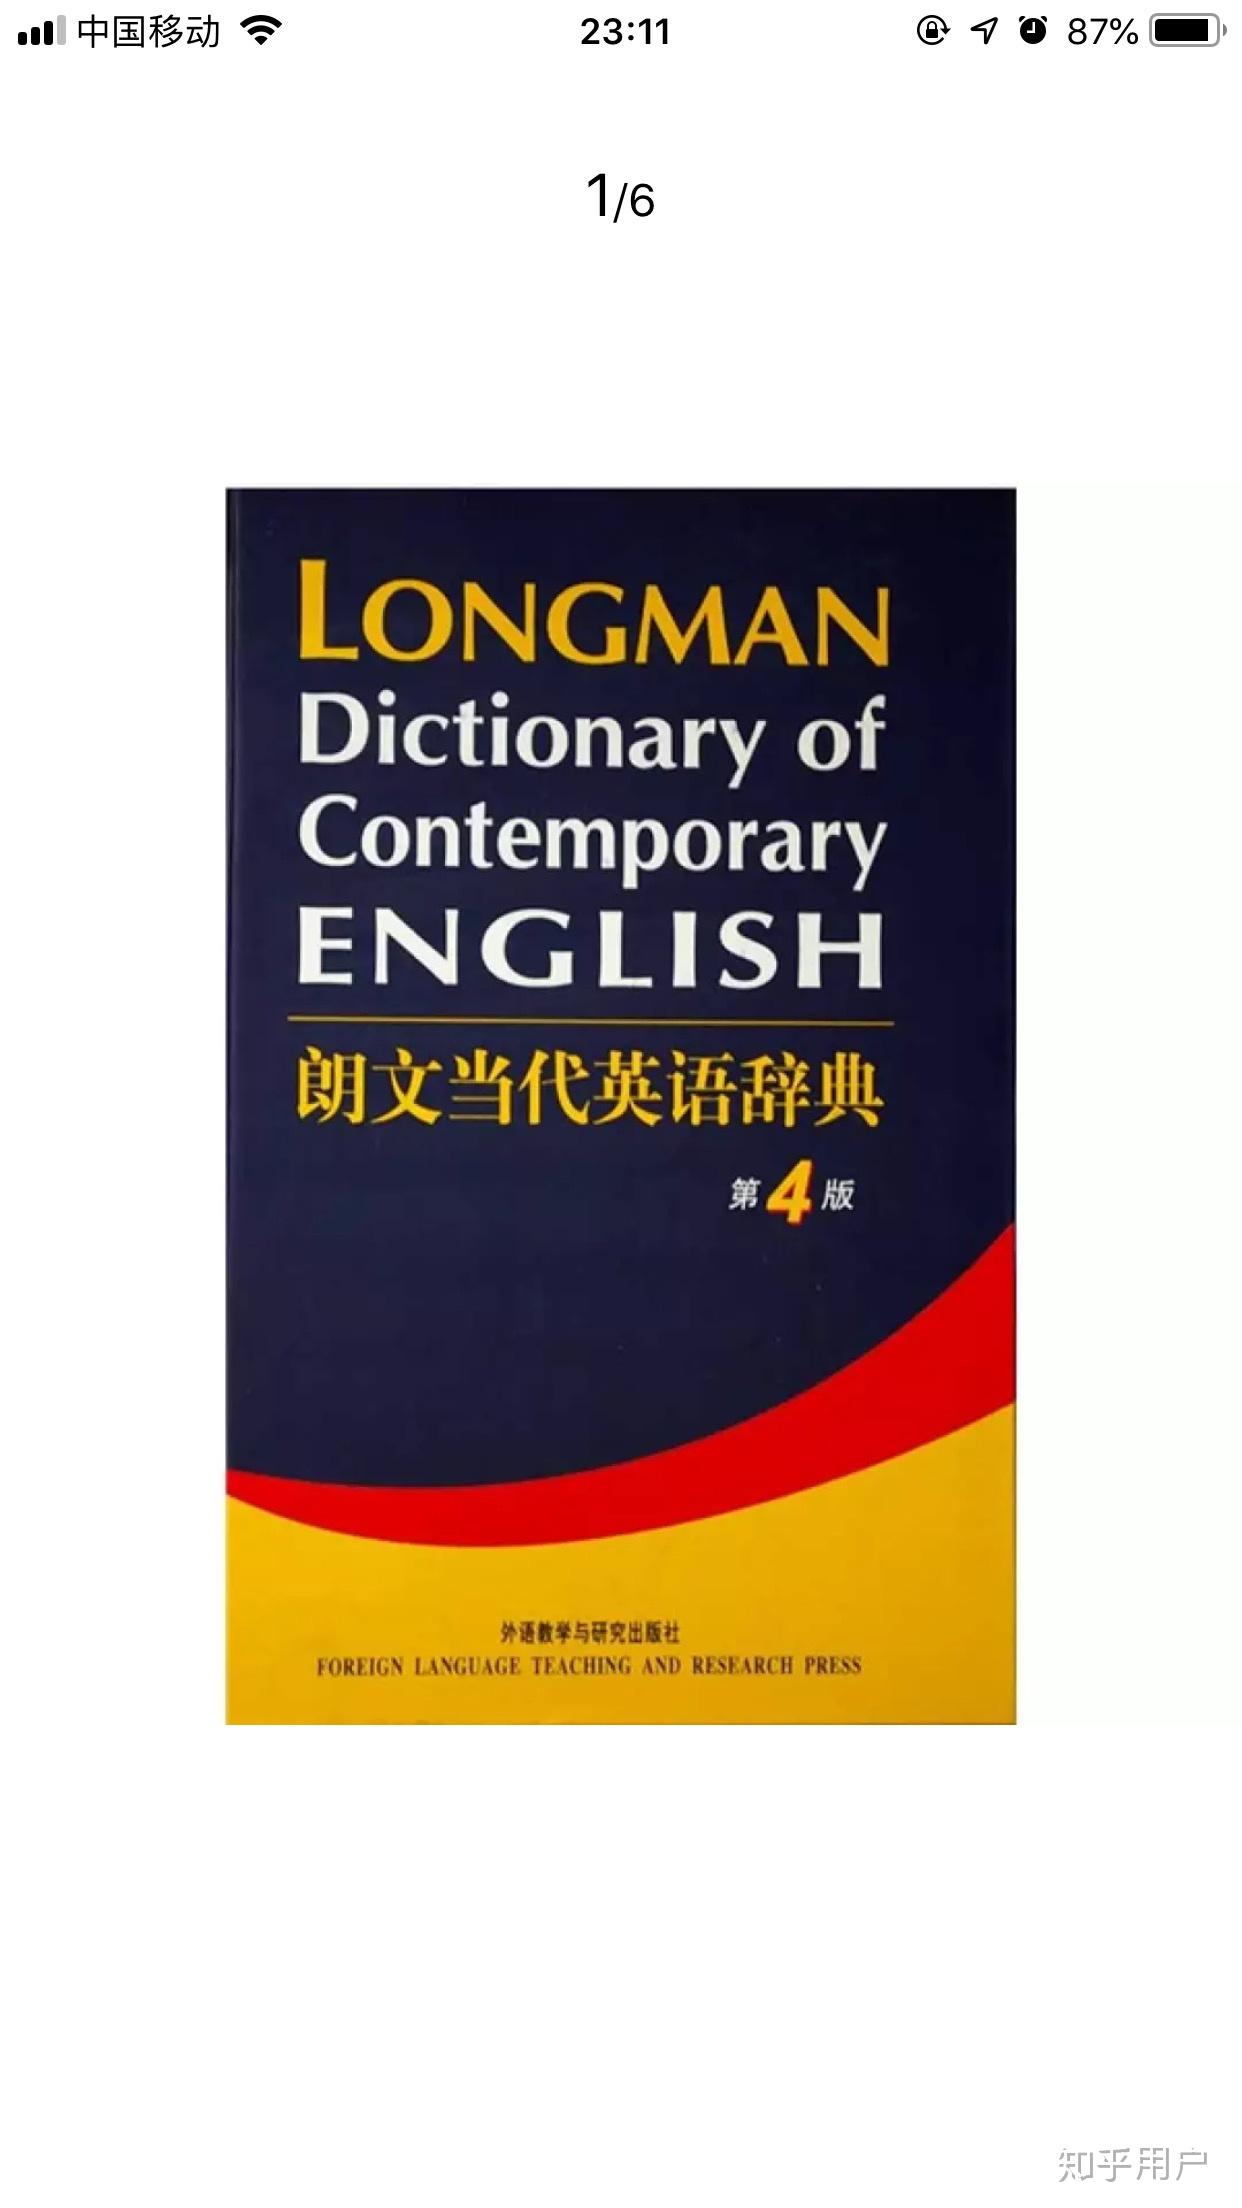 朗文当代英文词典是最好的英语词典吗? 